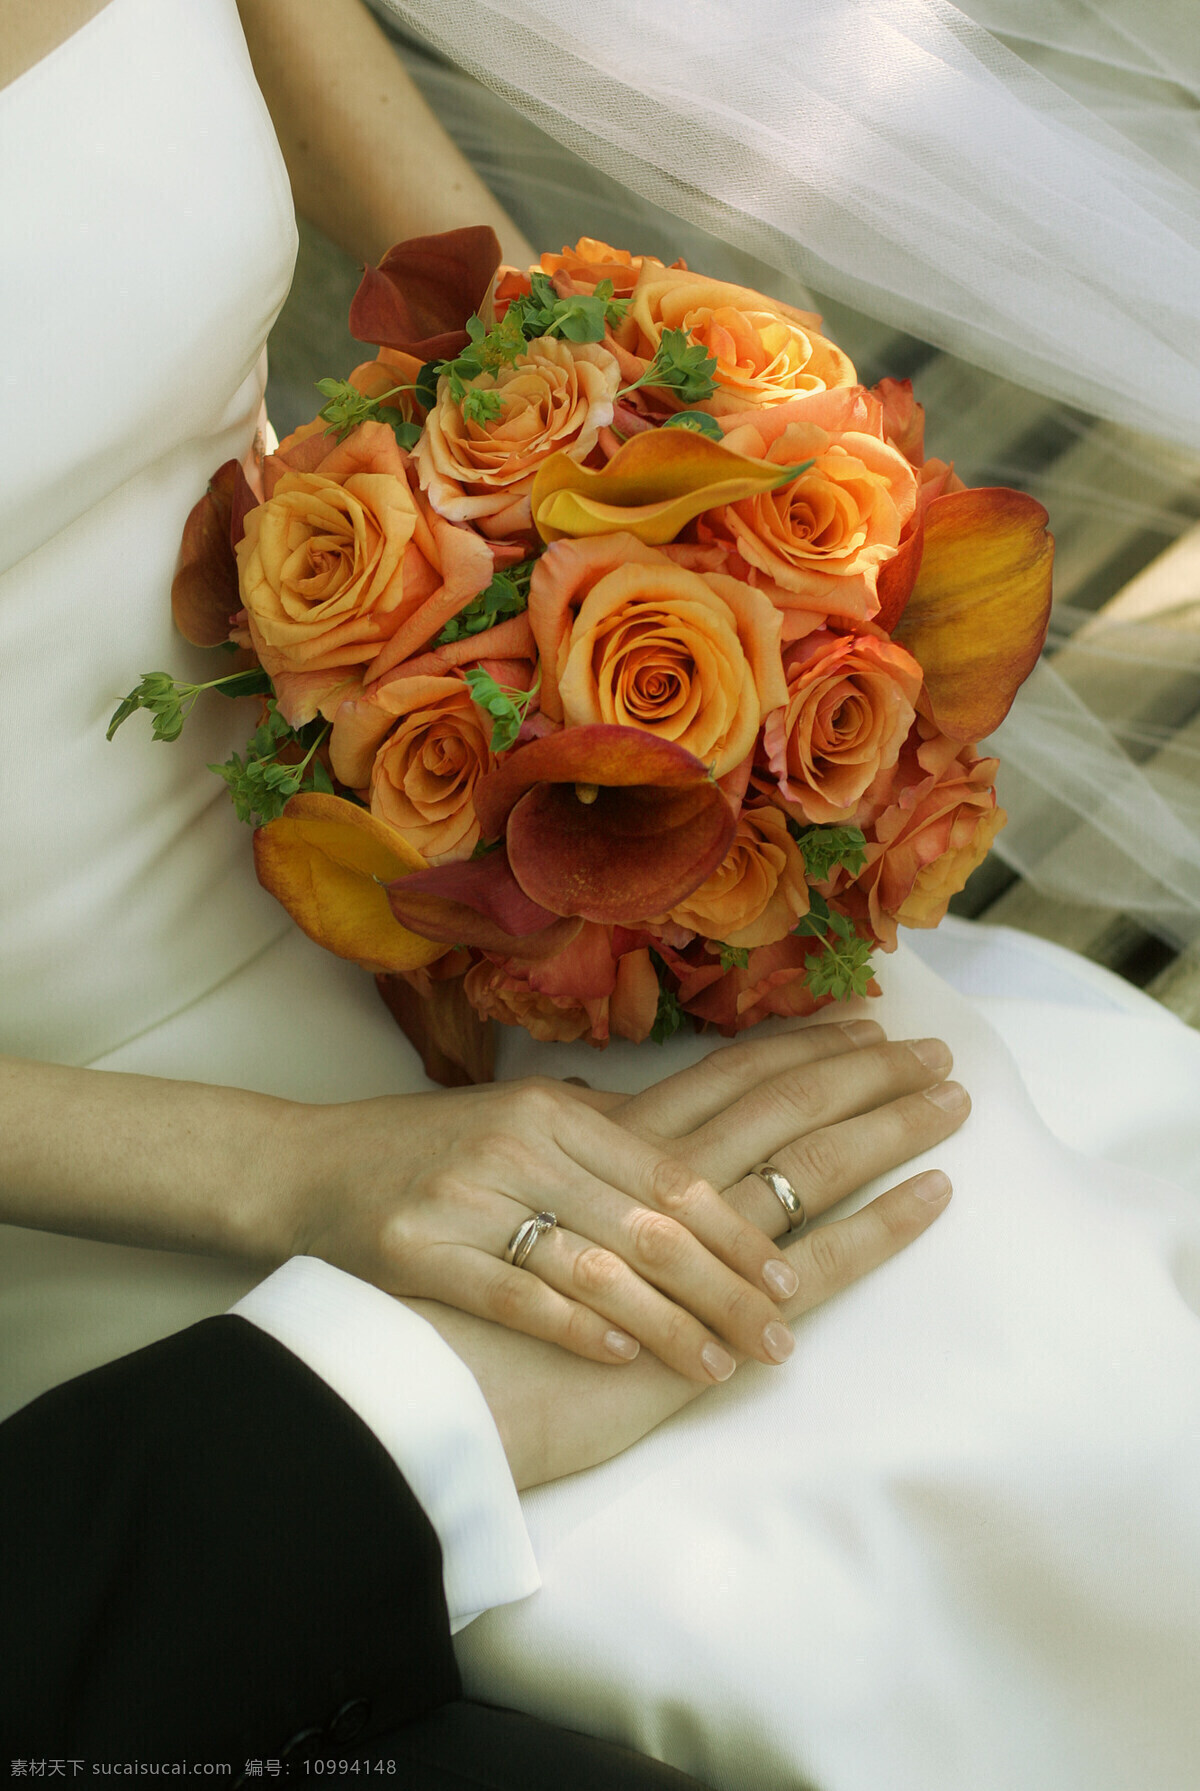 花束 花束图片 花团 婚礼 婚庆 节日庆祝图片 结婚 设计图 新娘花束图片 鲜花花束图片 新娘 文化艺术